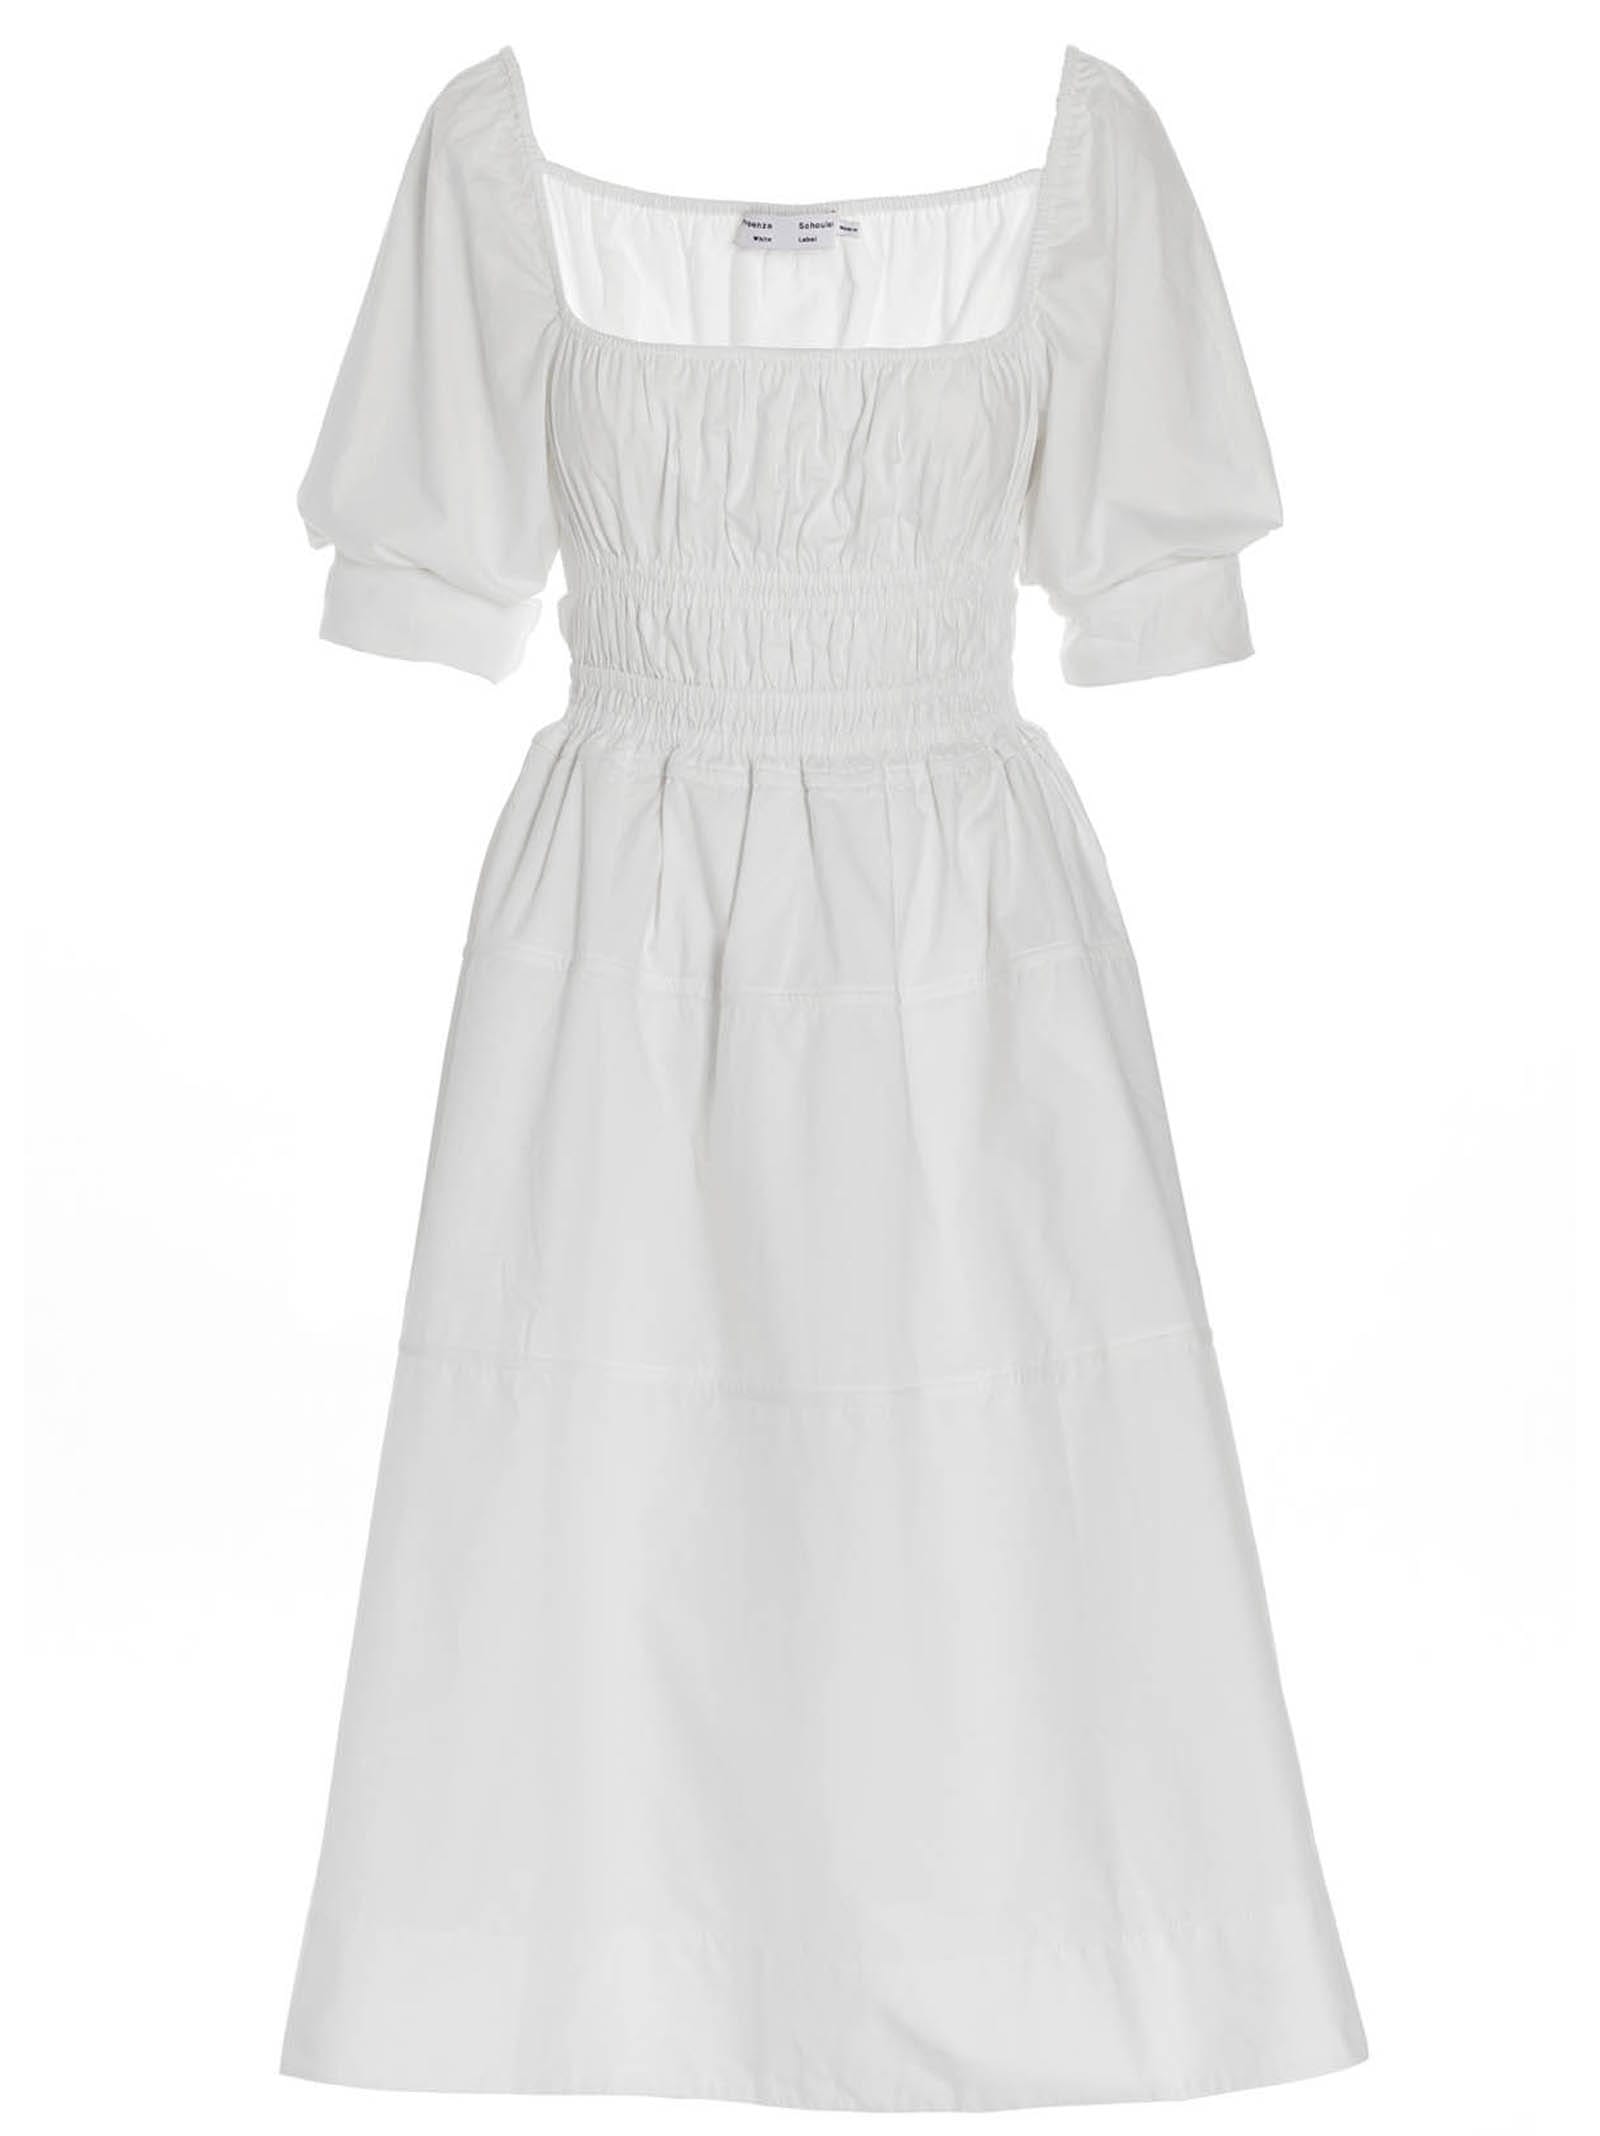 PROENZA SCHOULER WHITE LABEL POPLIN DRESS